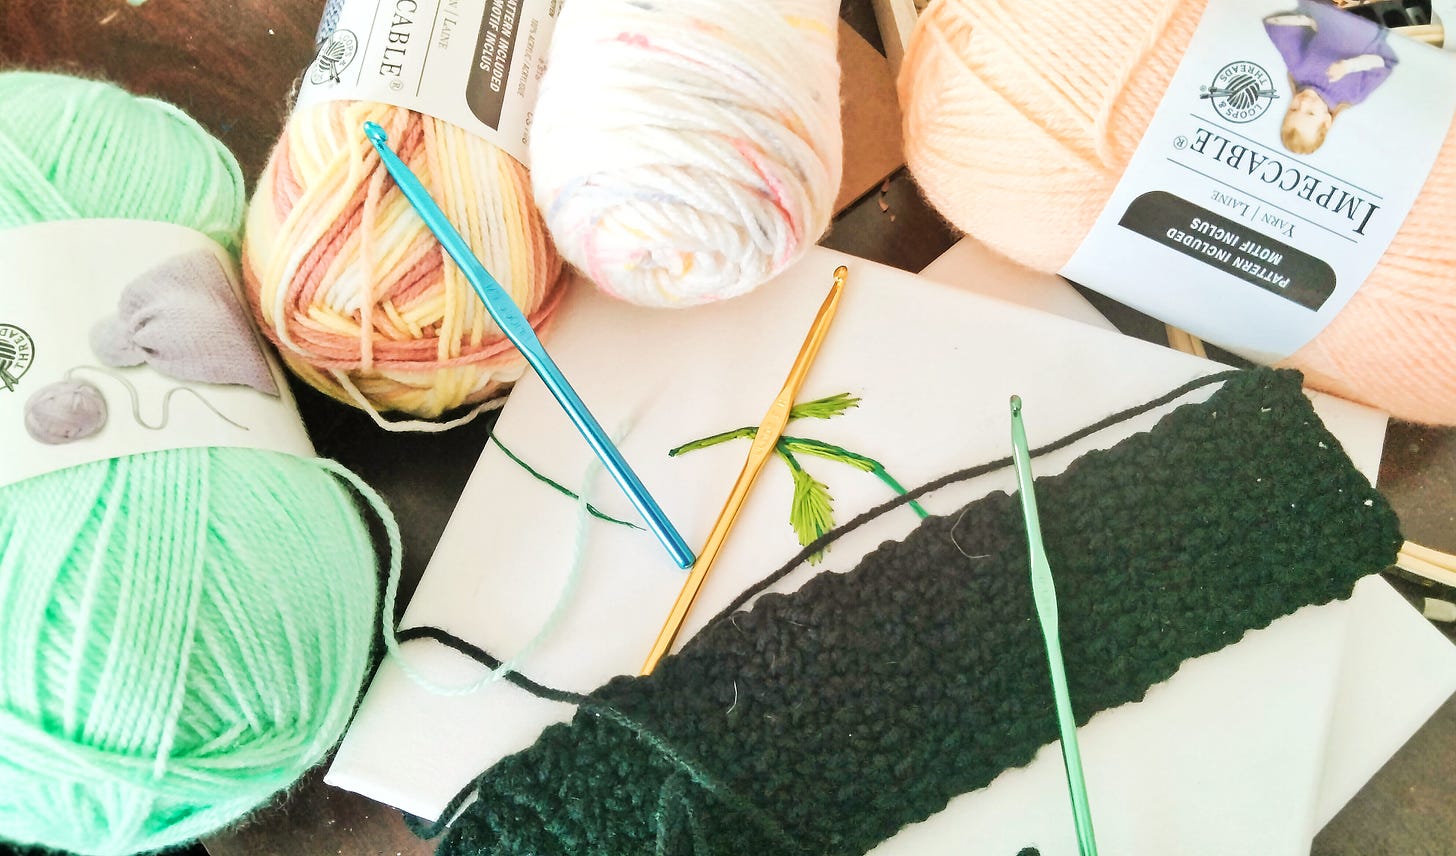 Yarnand crochet materials